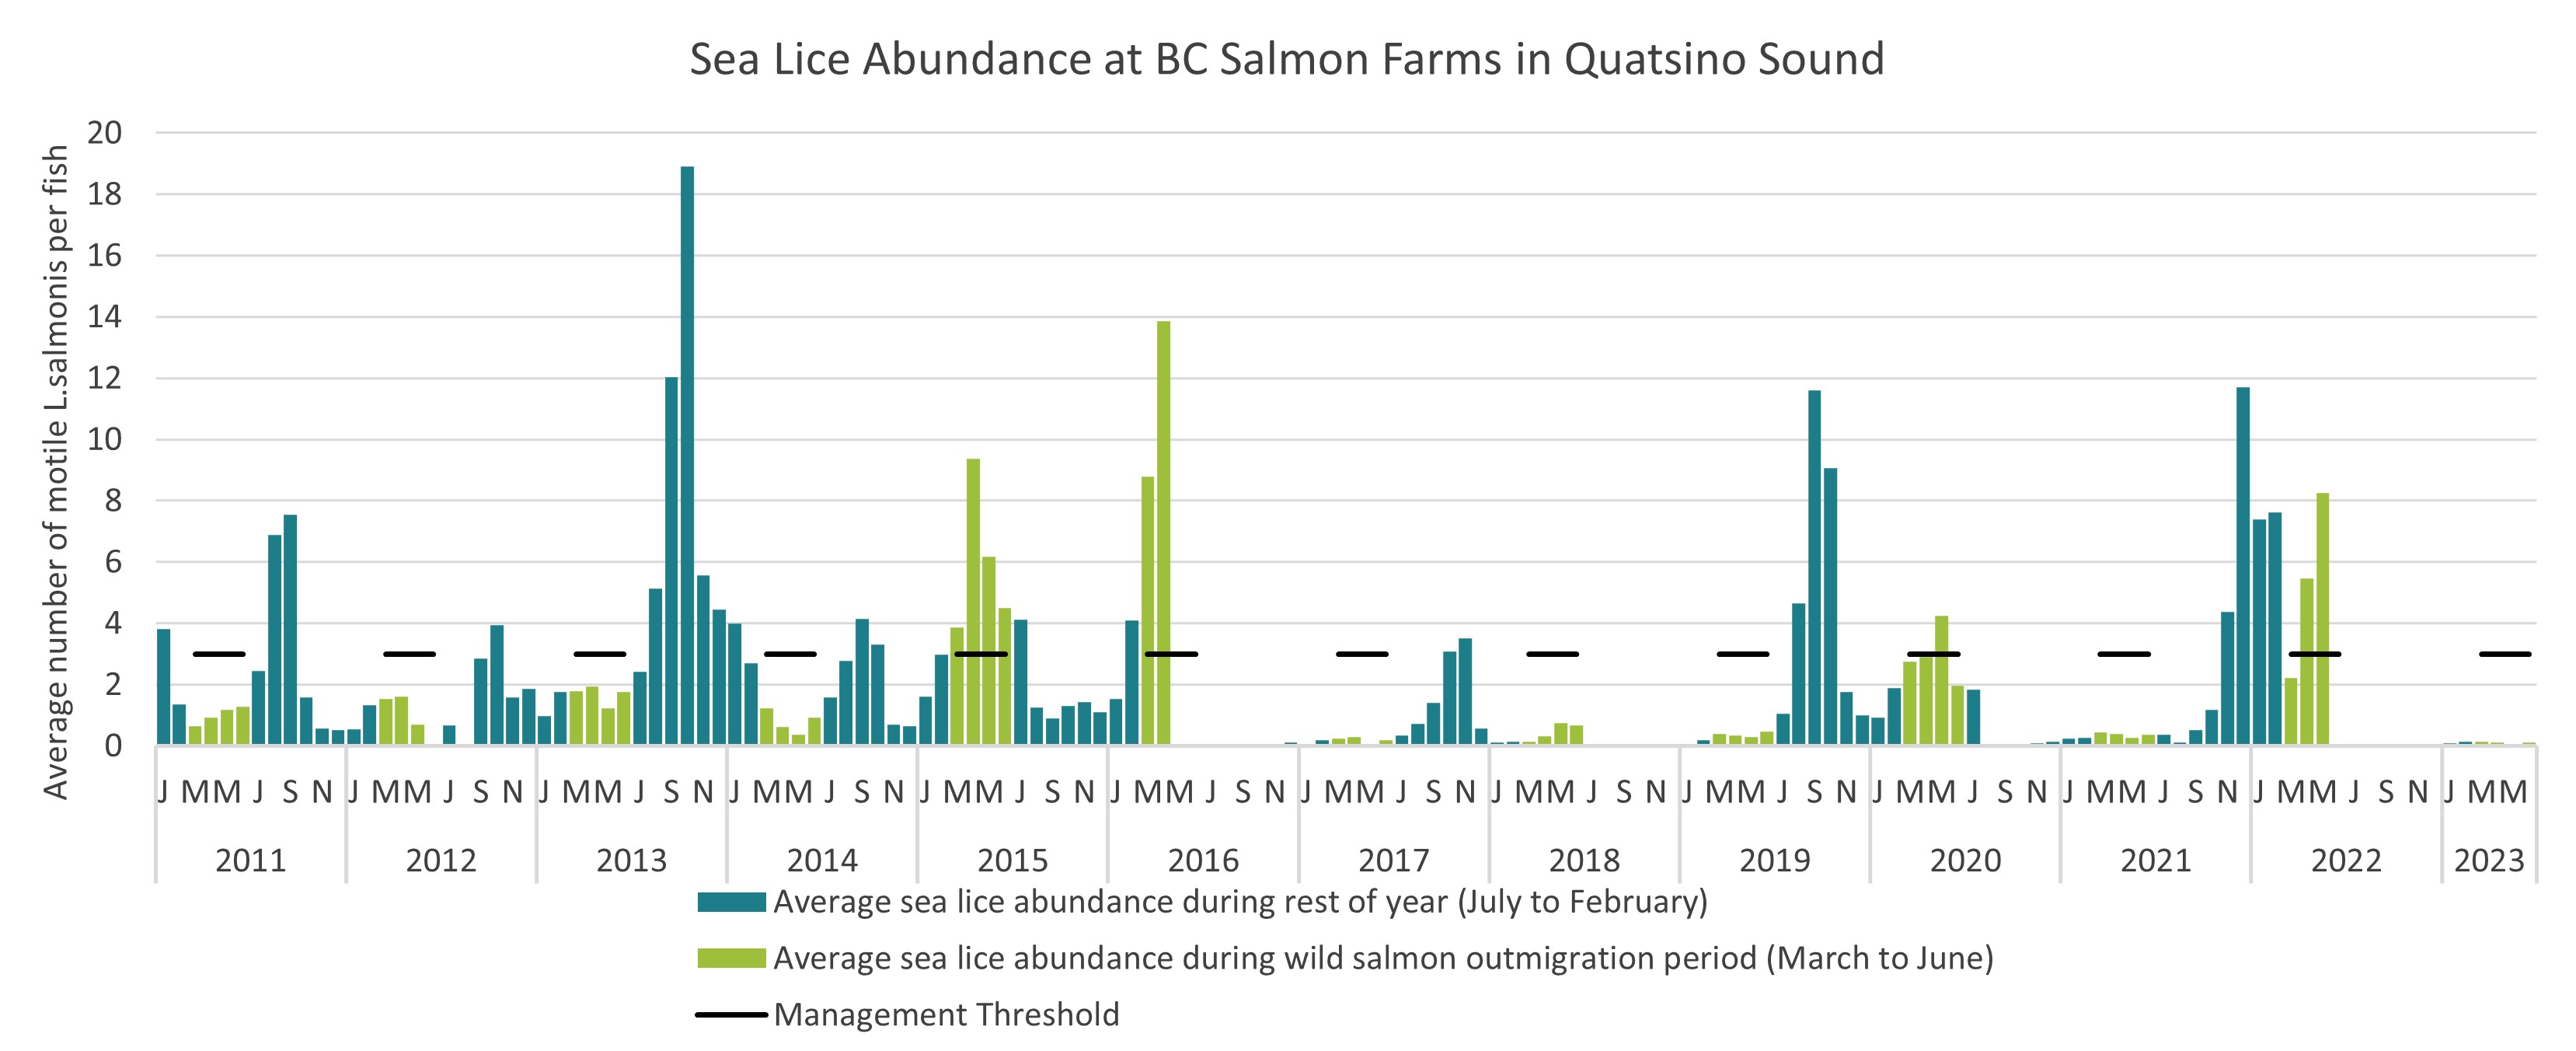 Sea Lice Abundance at BC Salmon Farms in the Quatsino Sound area, 2011 to 2023